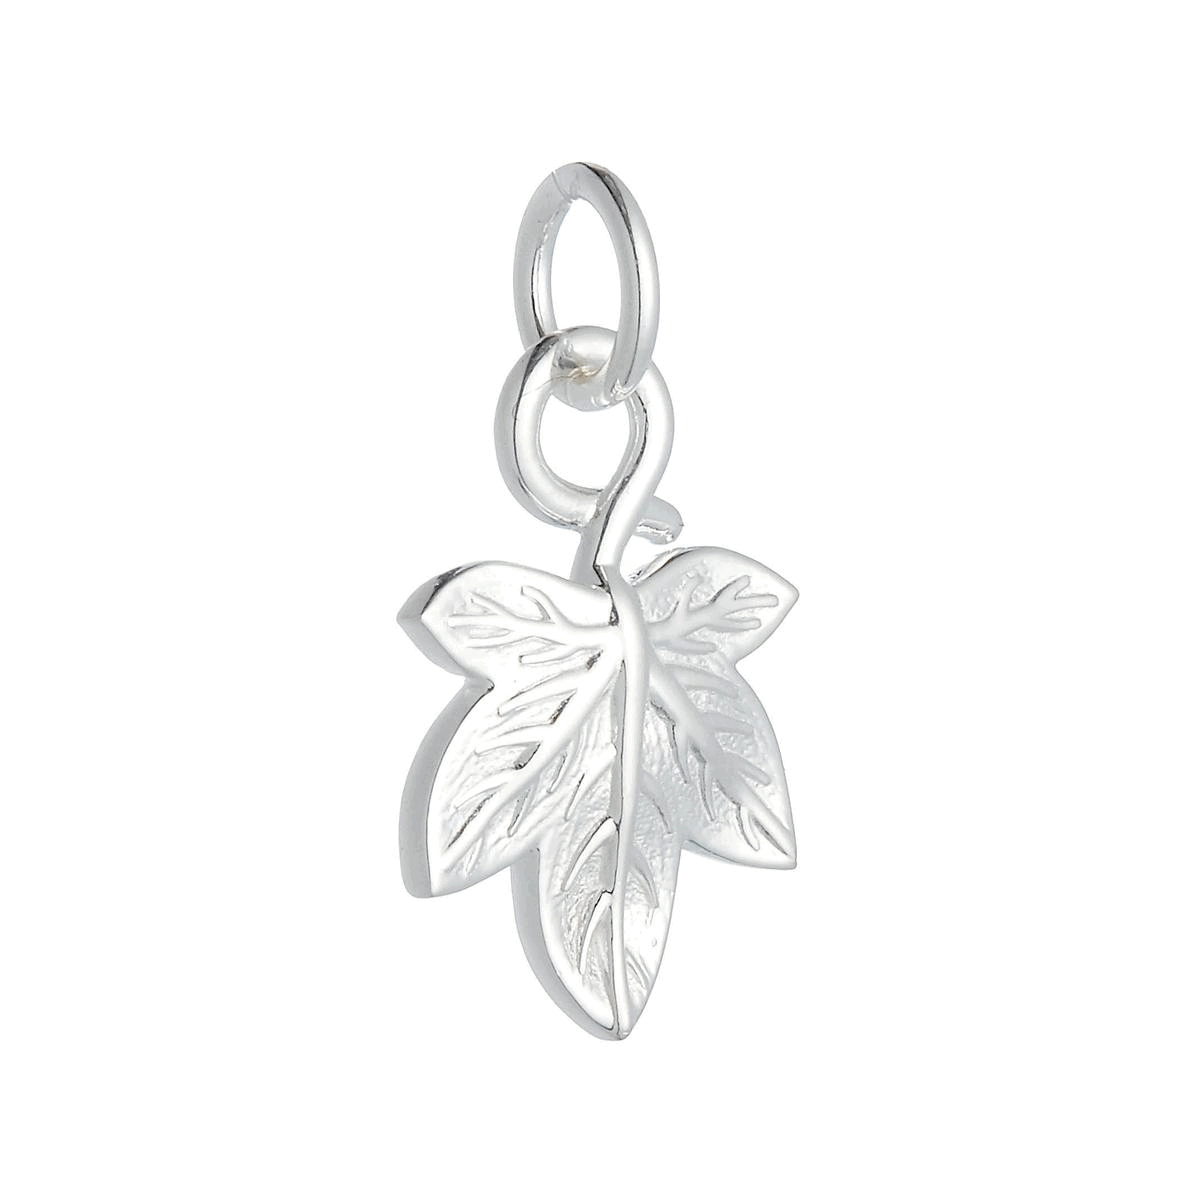 solid silver ivy leaf charm for bracelet or pendant